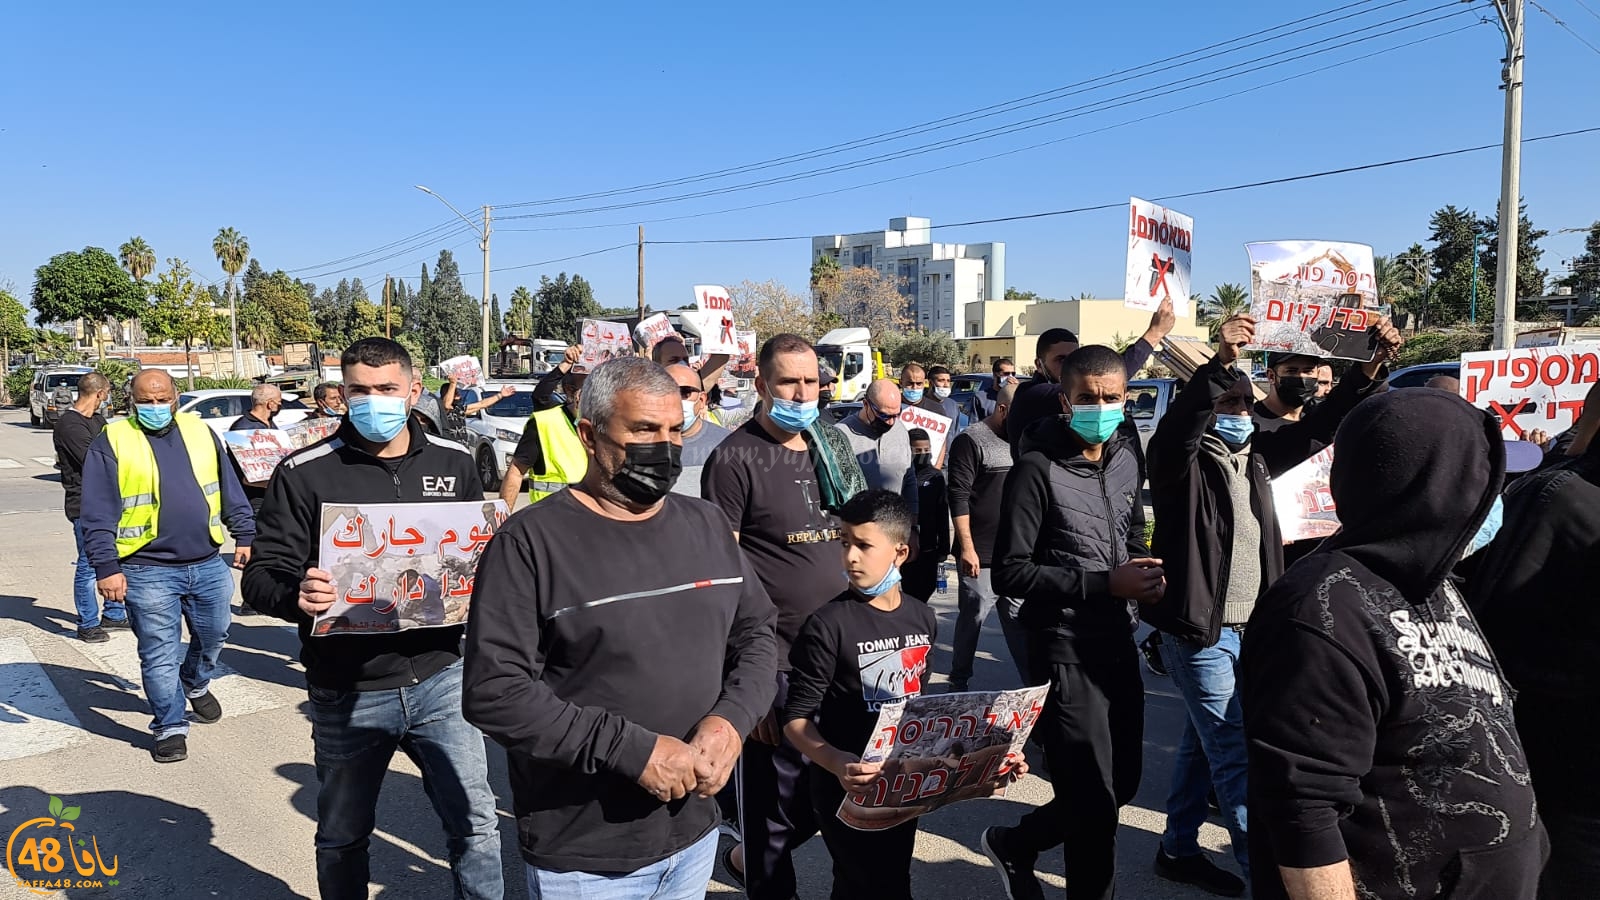 فيديو: تظاهرة غاضبة في مدينة اللد احتجاجاً على هدم البيوت